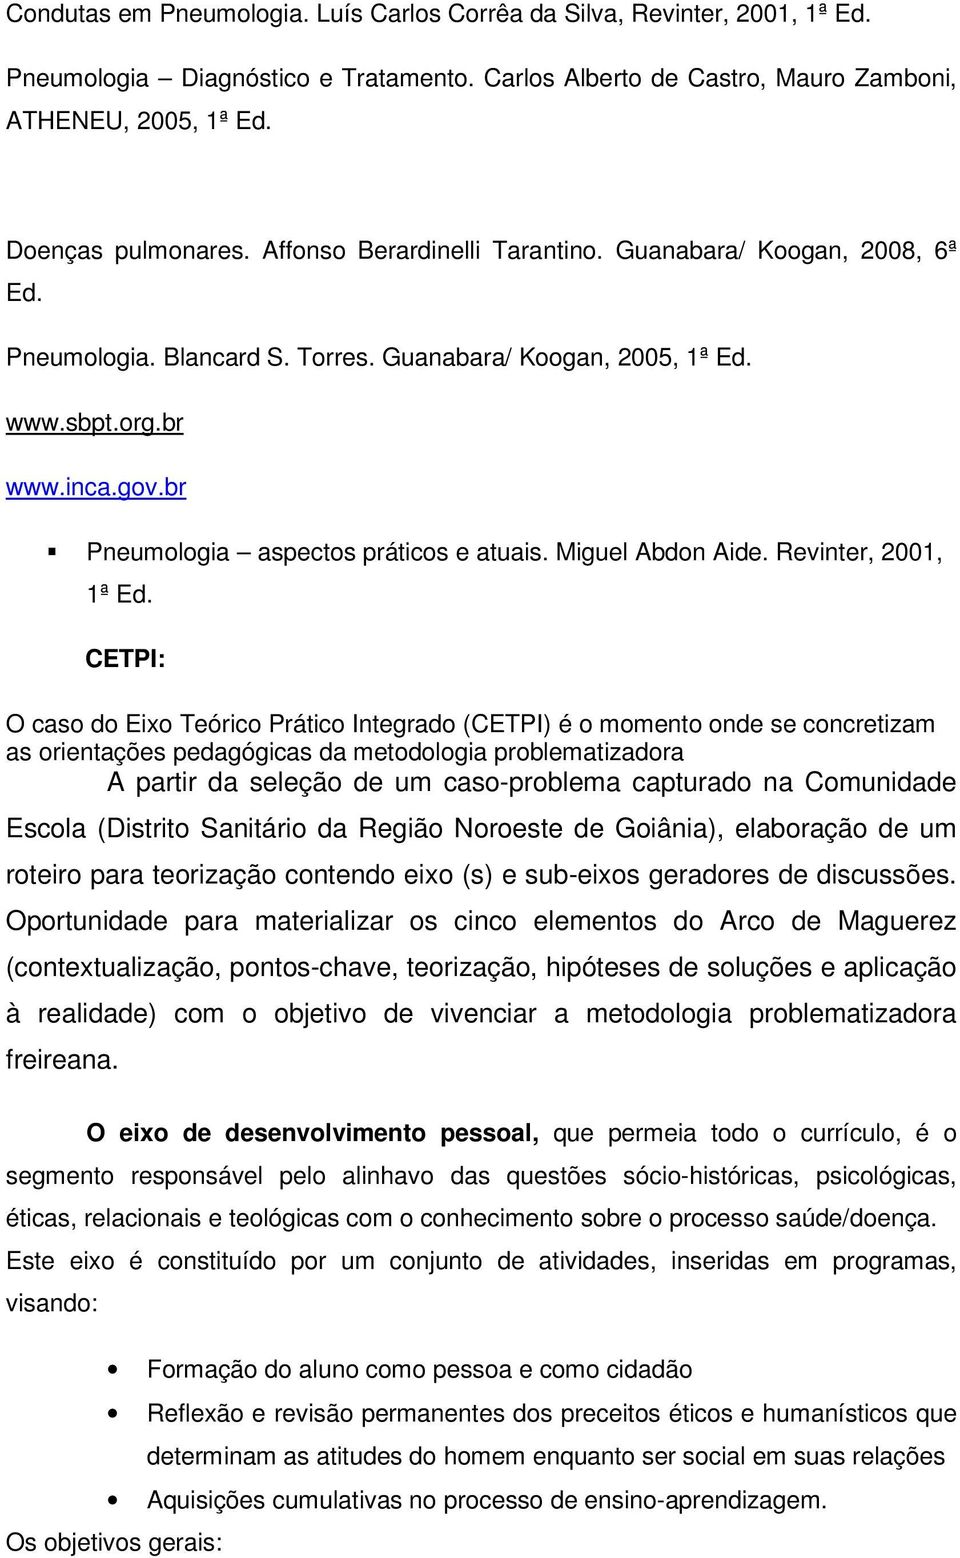 Miguel Abdon Aide. Revinter, 2001, 1ª Ed.